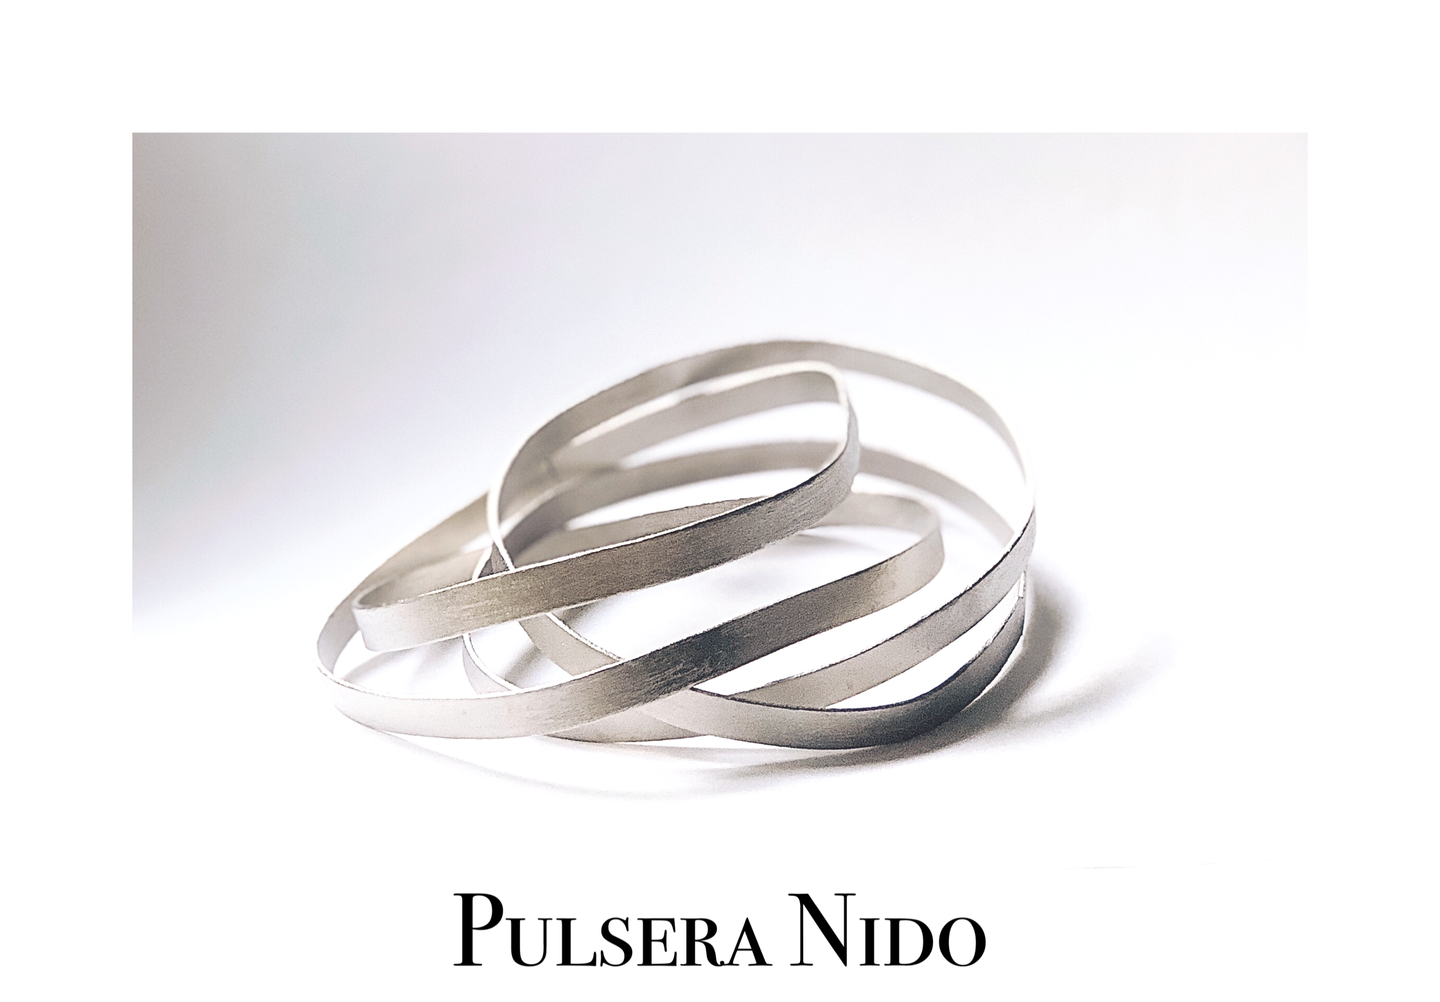 Pulsera Nido